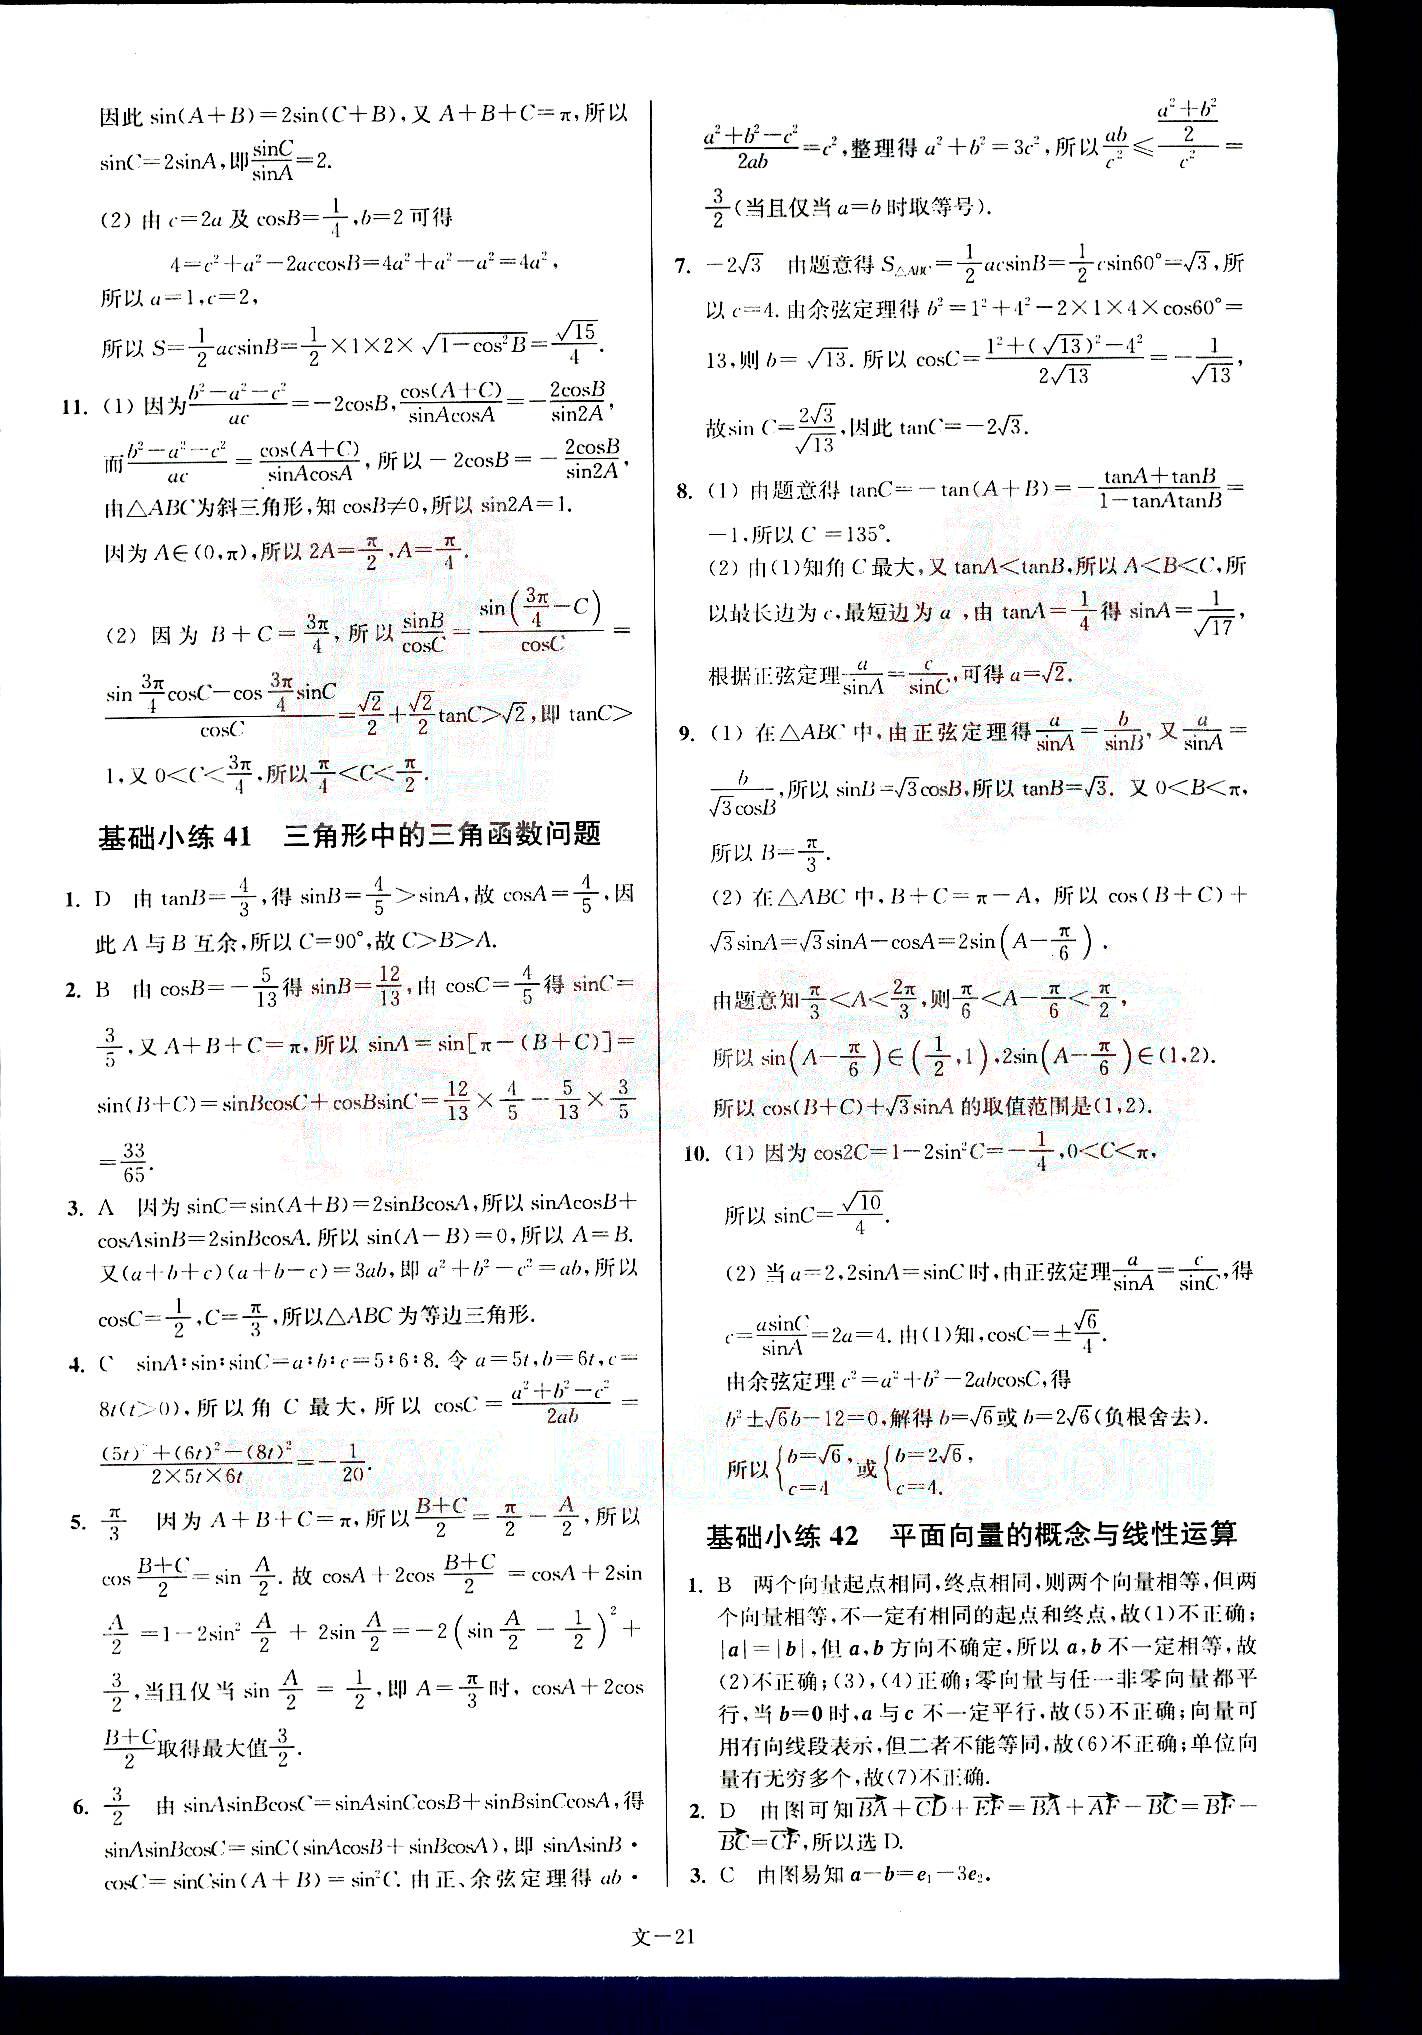 小题狂做-高考数学-文科-最基础篇南京大学出版社 第5部分 [1]